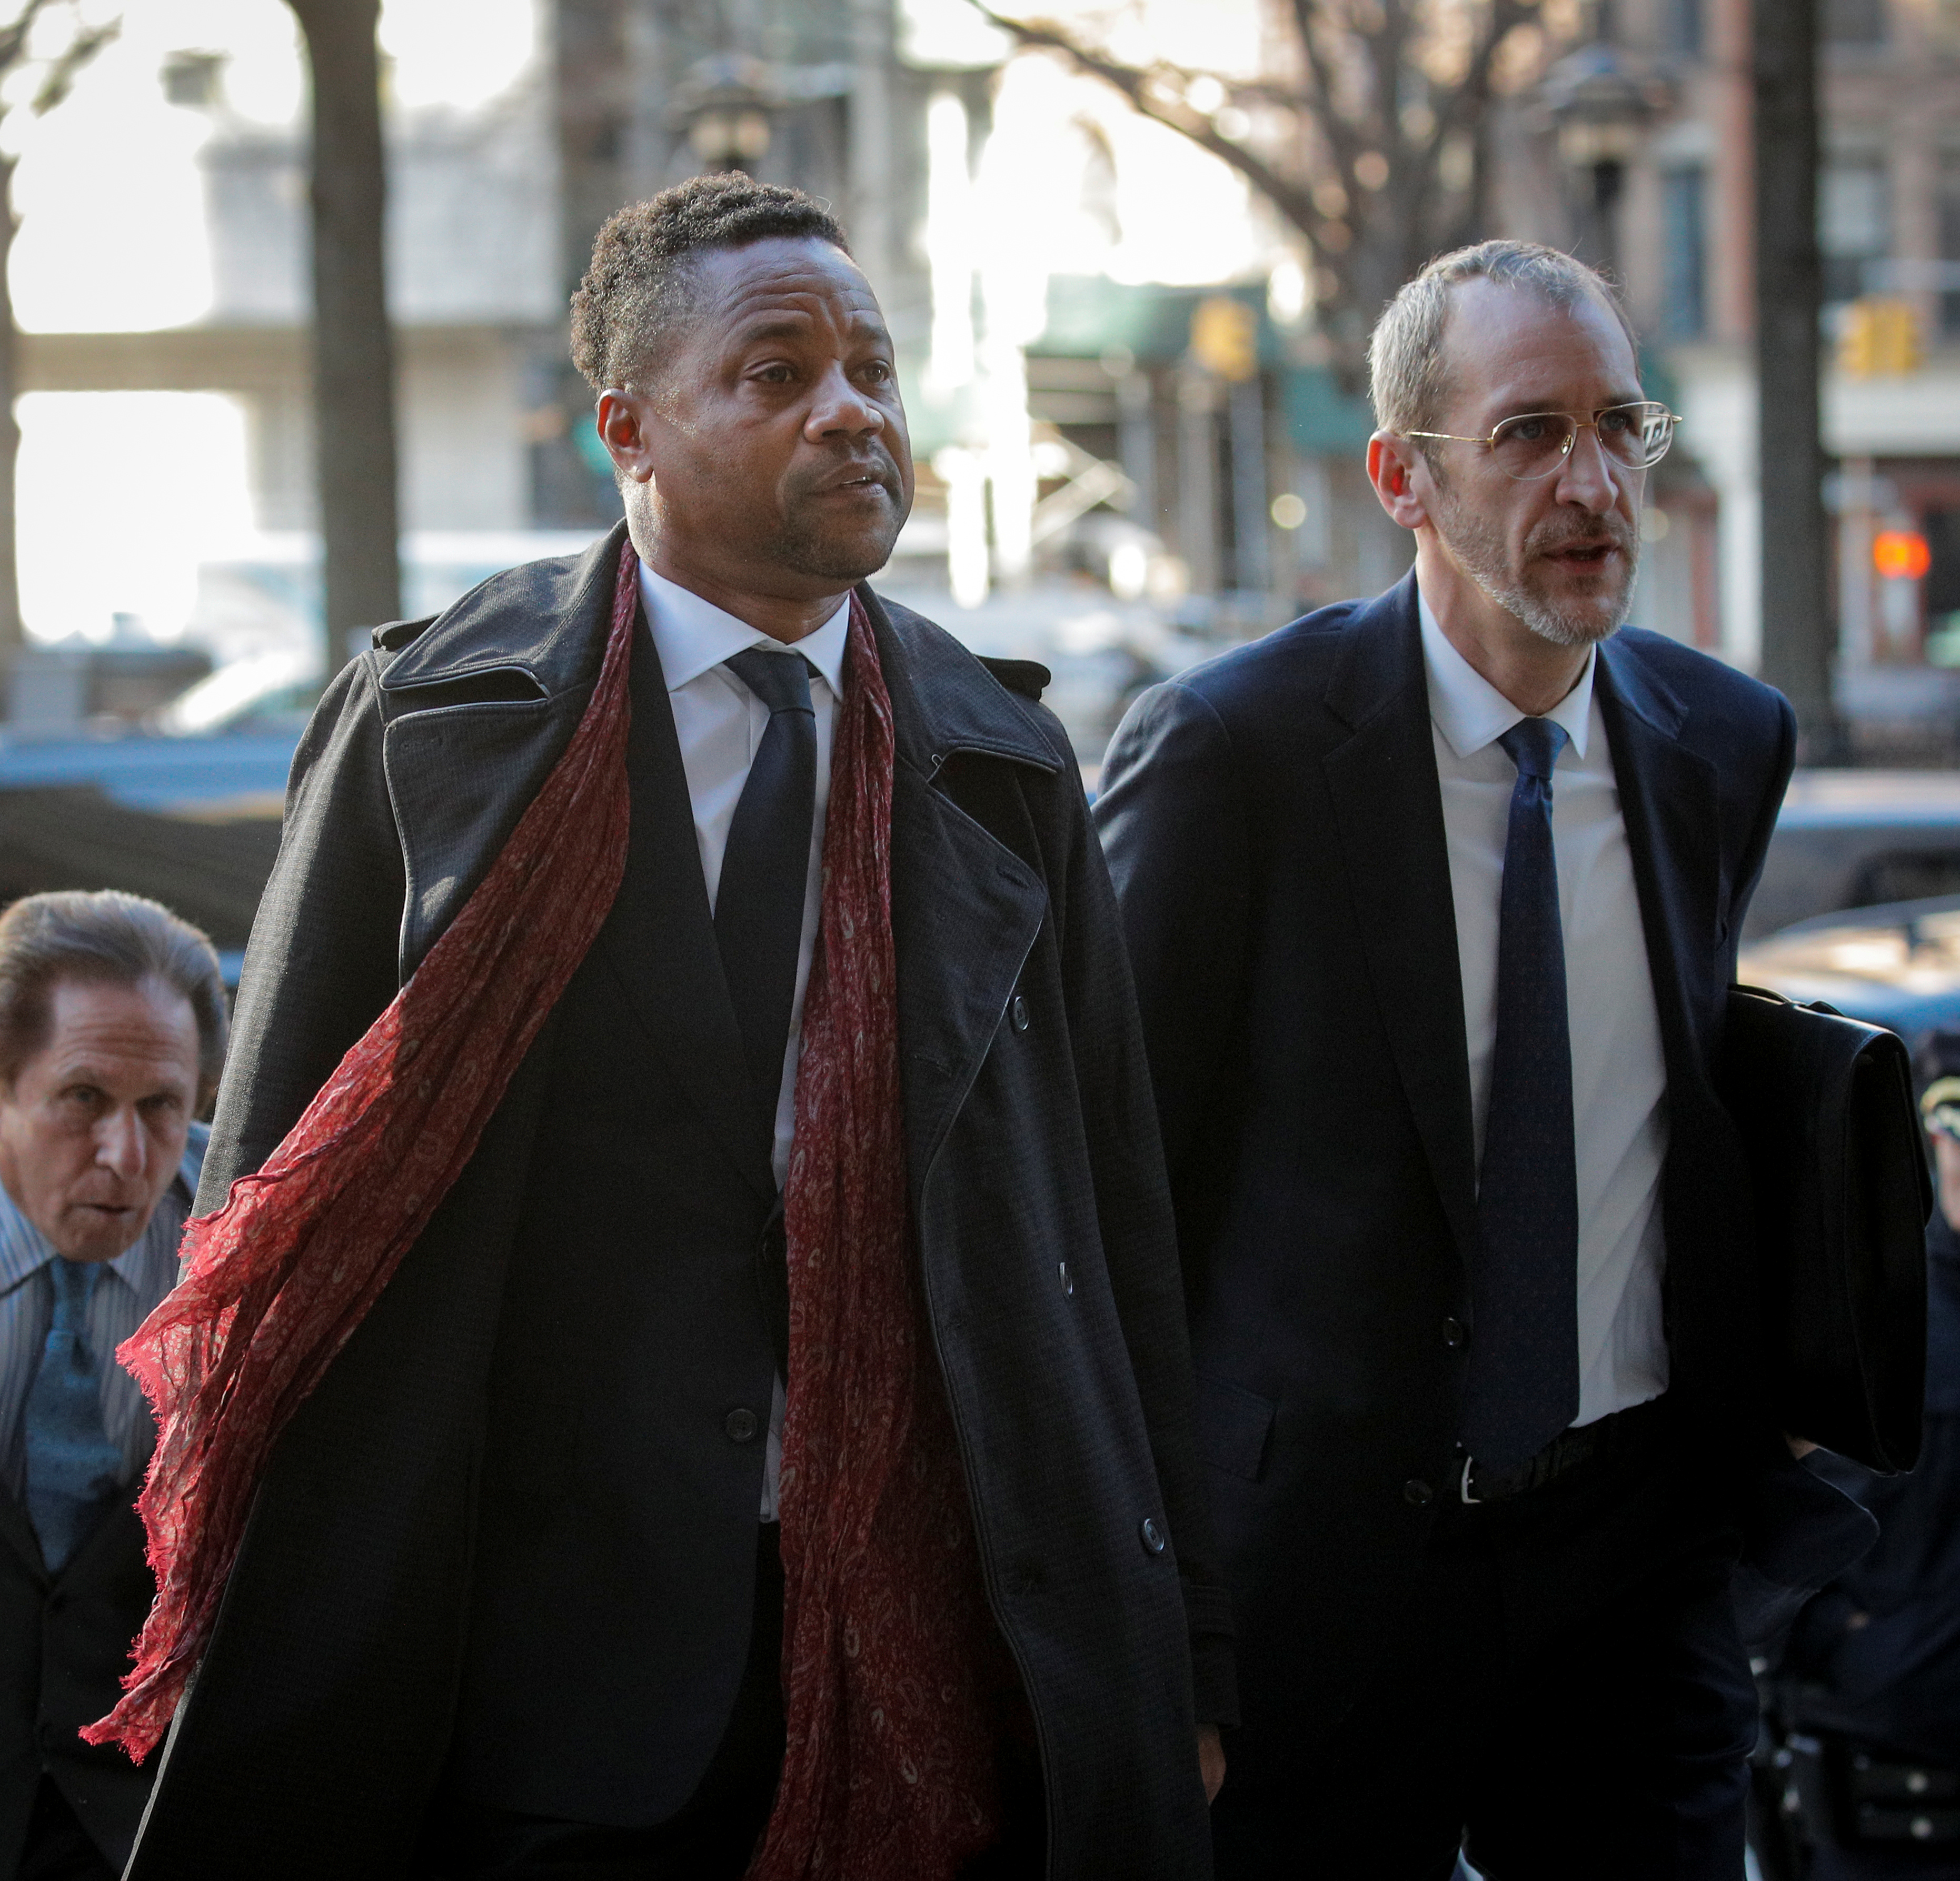 El actor Cuba Gooding Jr. llega al Tribunal Penal de Nueva York en el distrito de Manhattan de la ciudad de Nueva York. REUTERS/Brendan McDermid